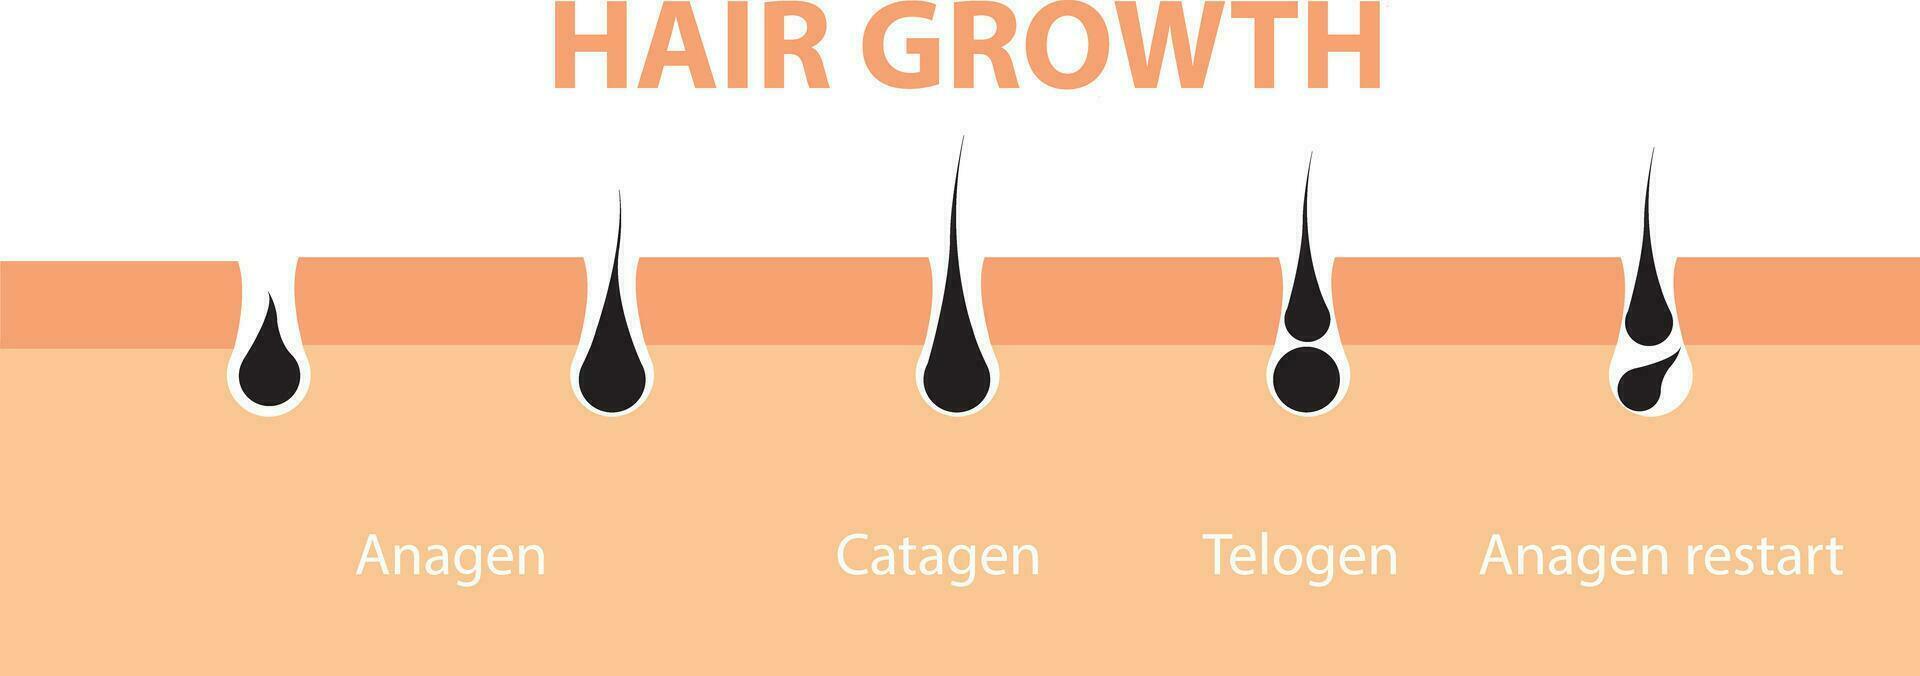 cabelo crescimento ciclo pele. folículo anatomia anágeno Estágio, cabelo crescimento diagrama ilustração. vetor